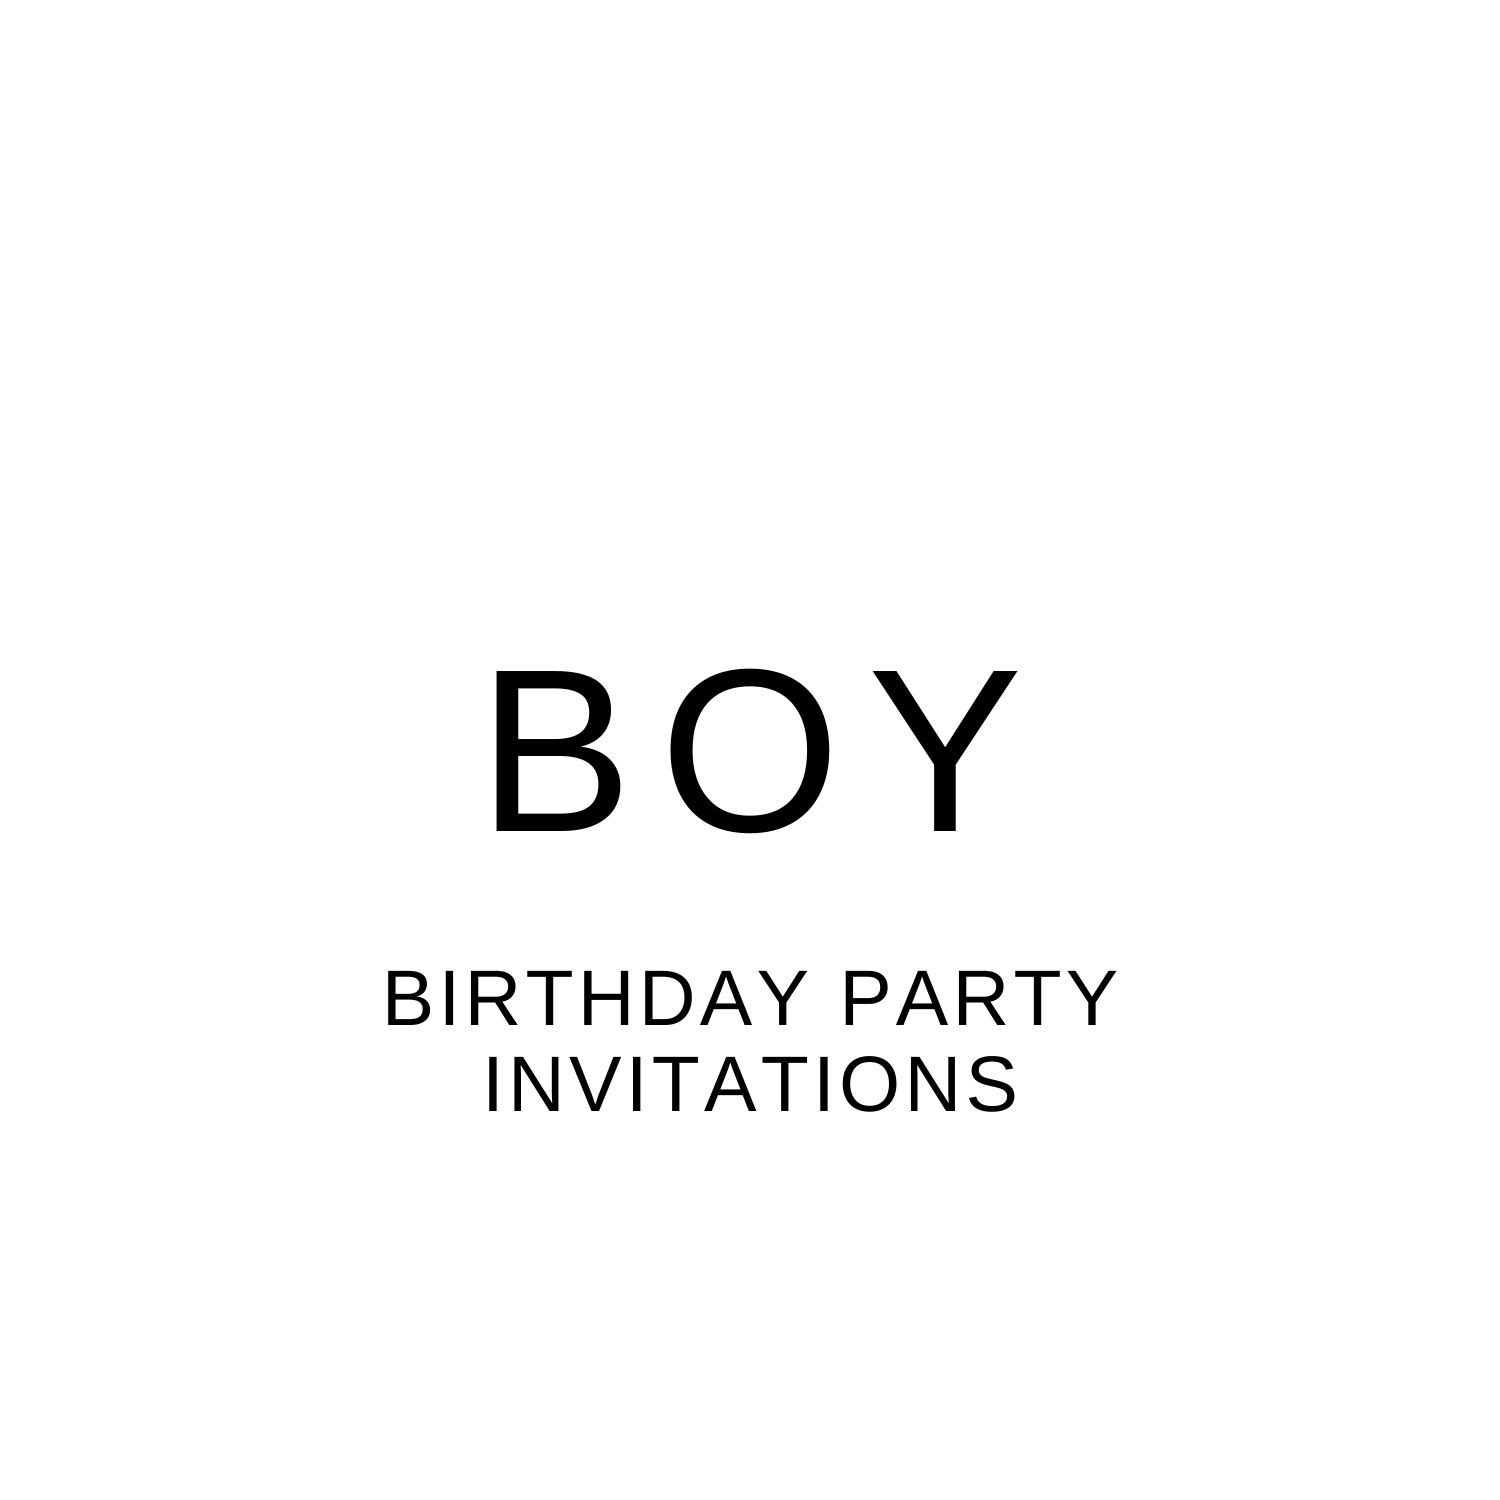 BOY BIRTHDAY PARTY INVITES